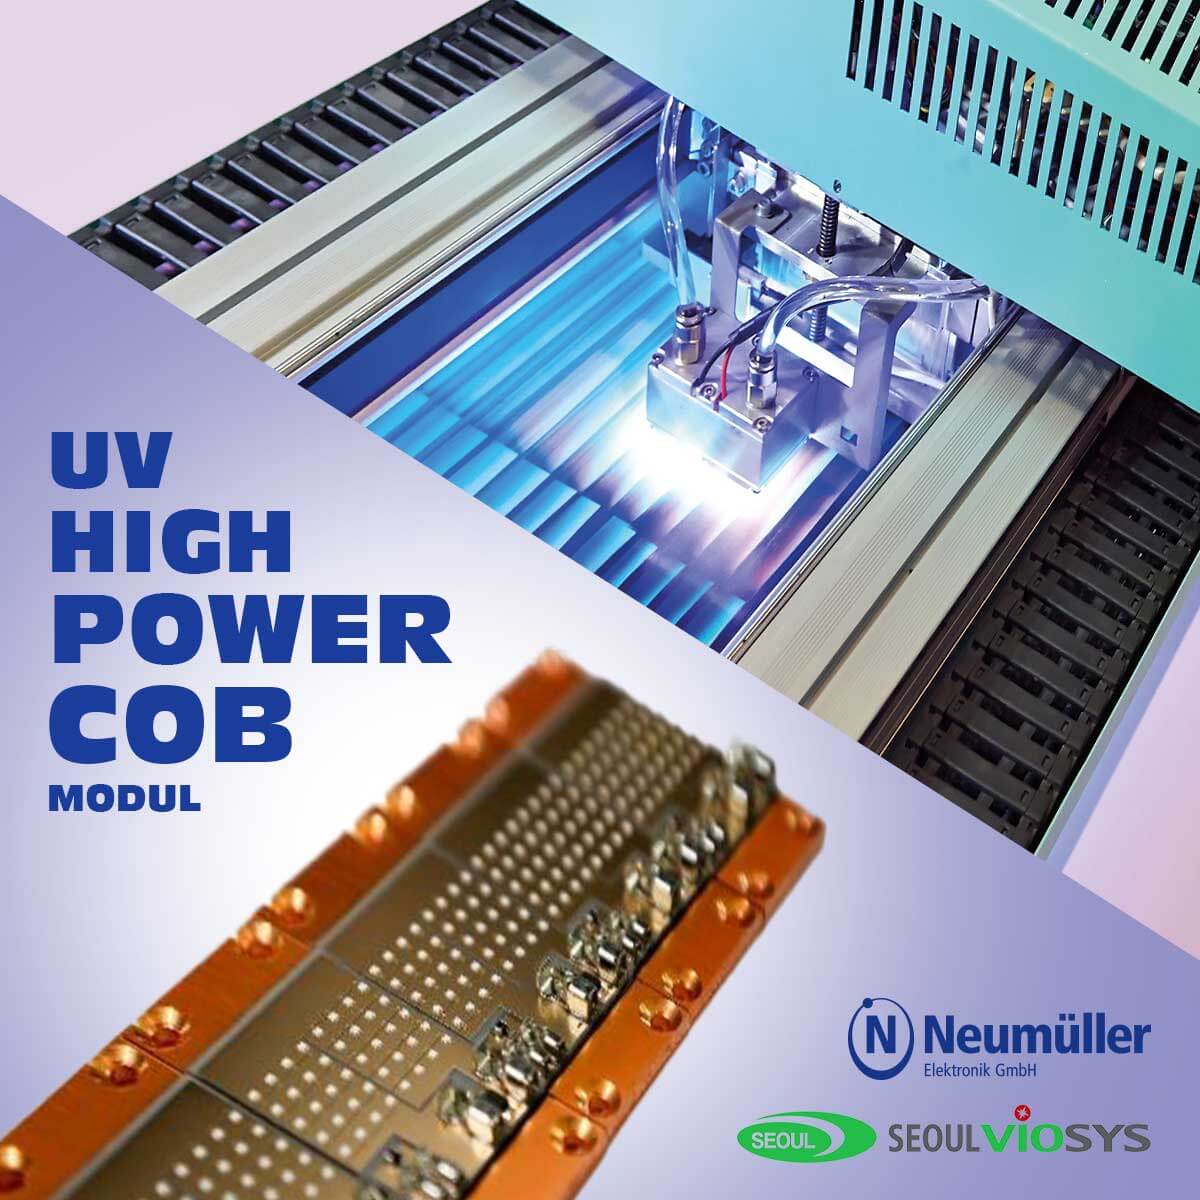 Das neue UV High Power COB Modul von Seoul Viosys